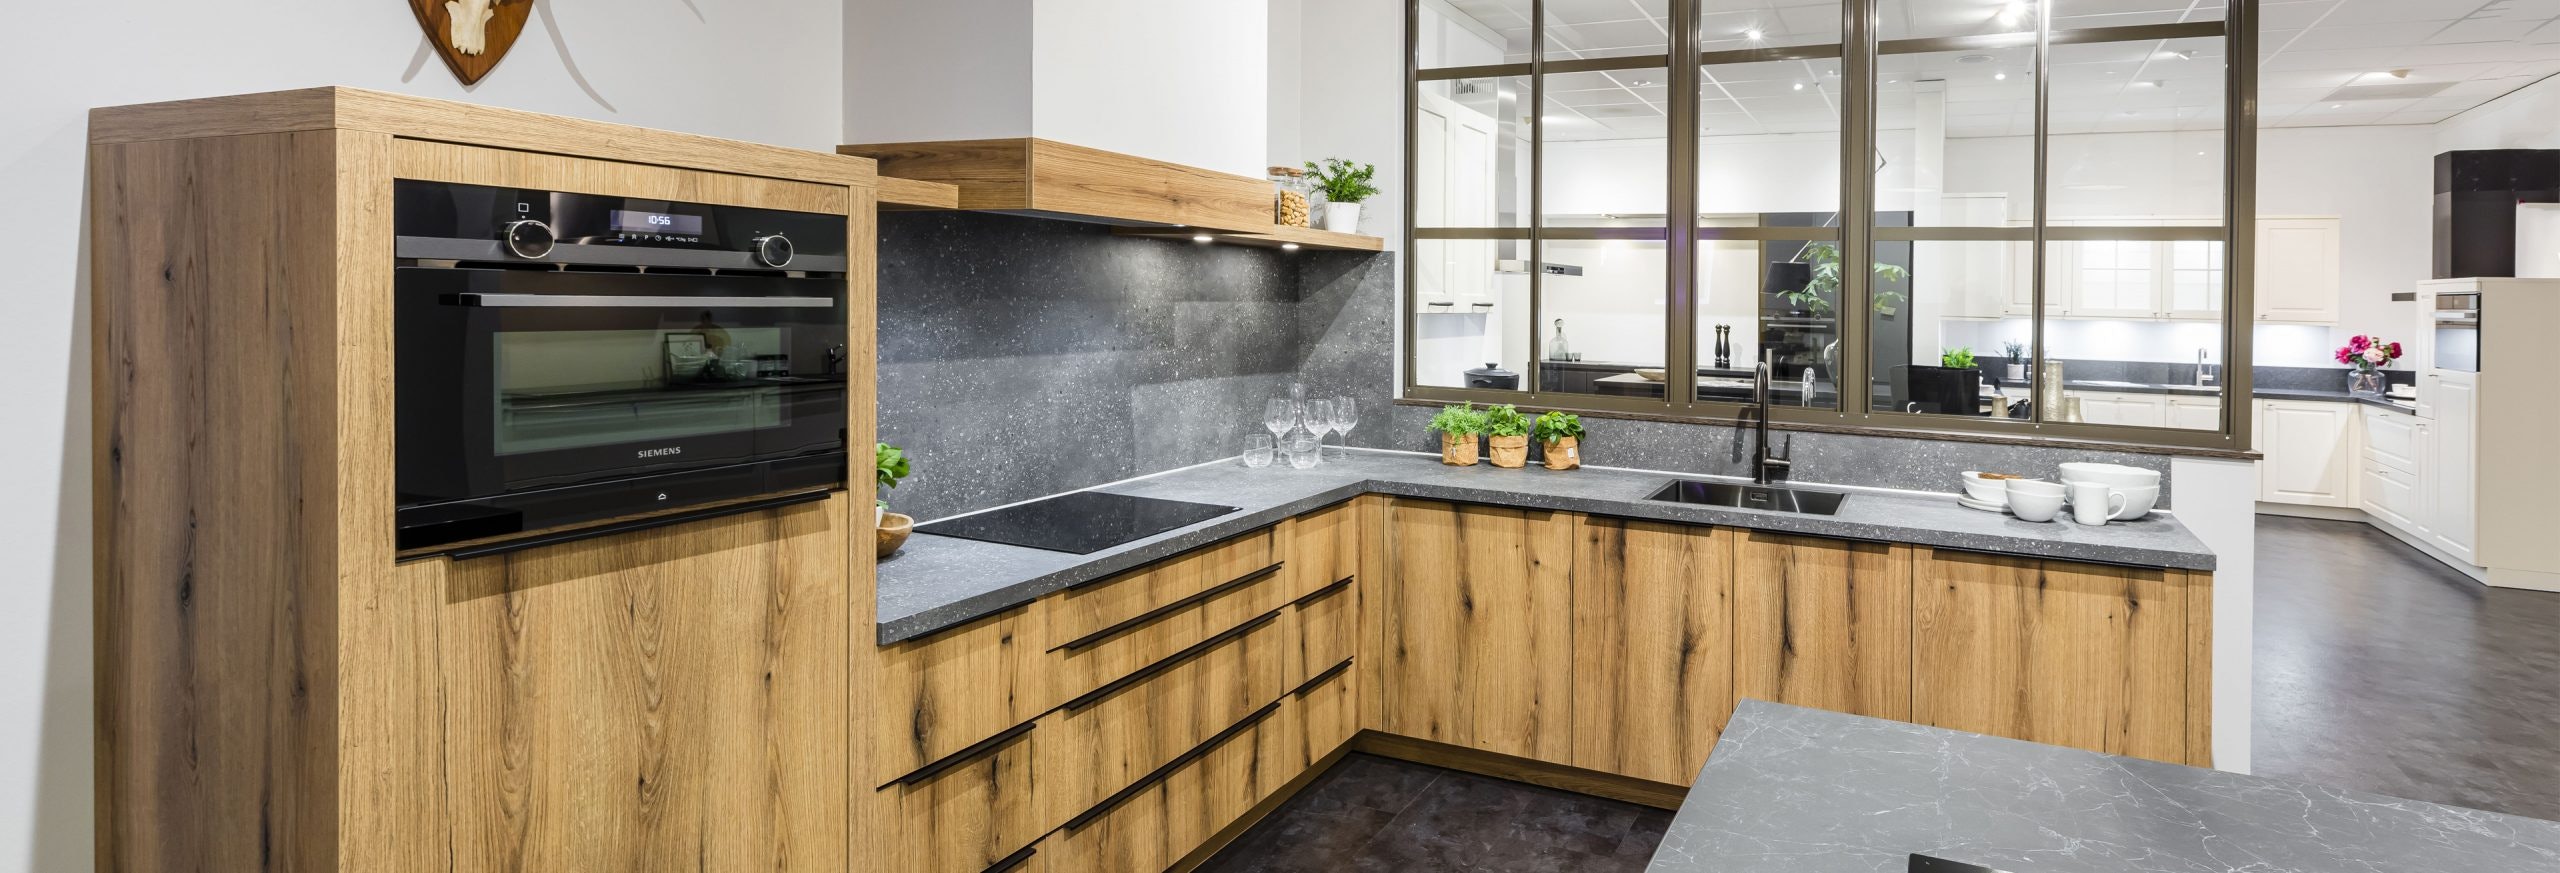 Keuken 1400234 - Warme houten keuken met grijs keukenblad